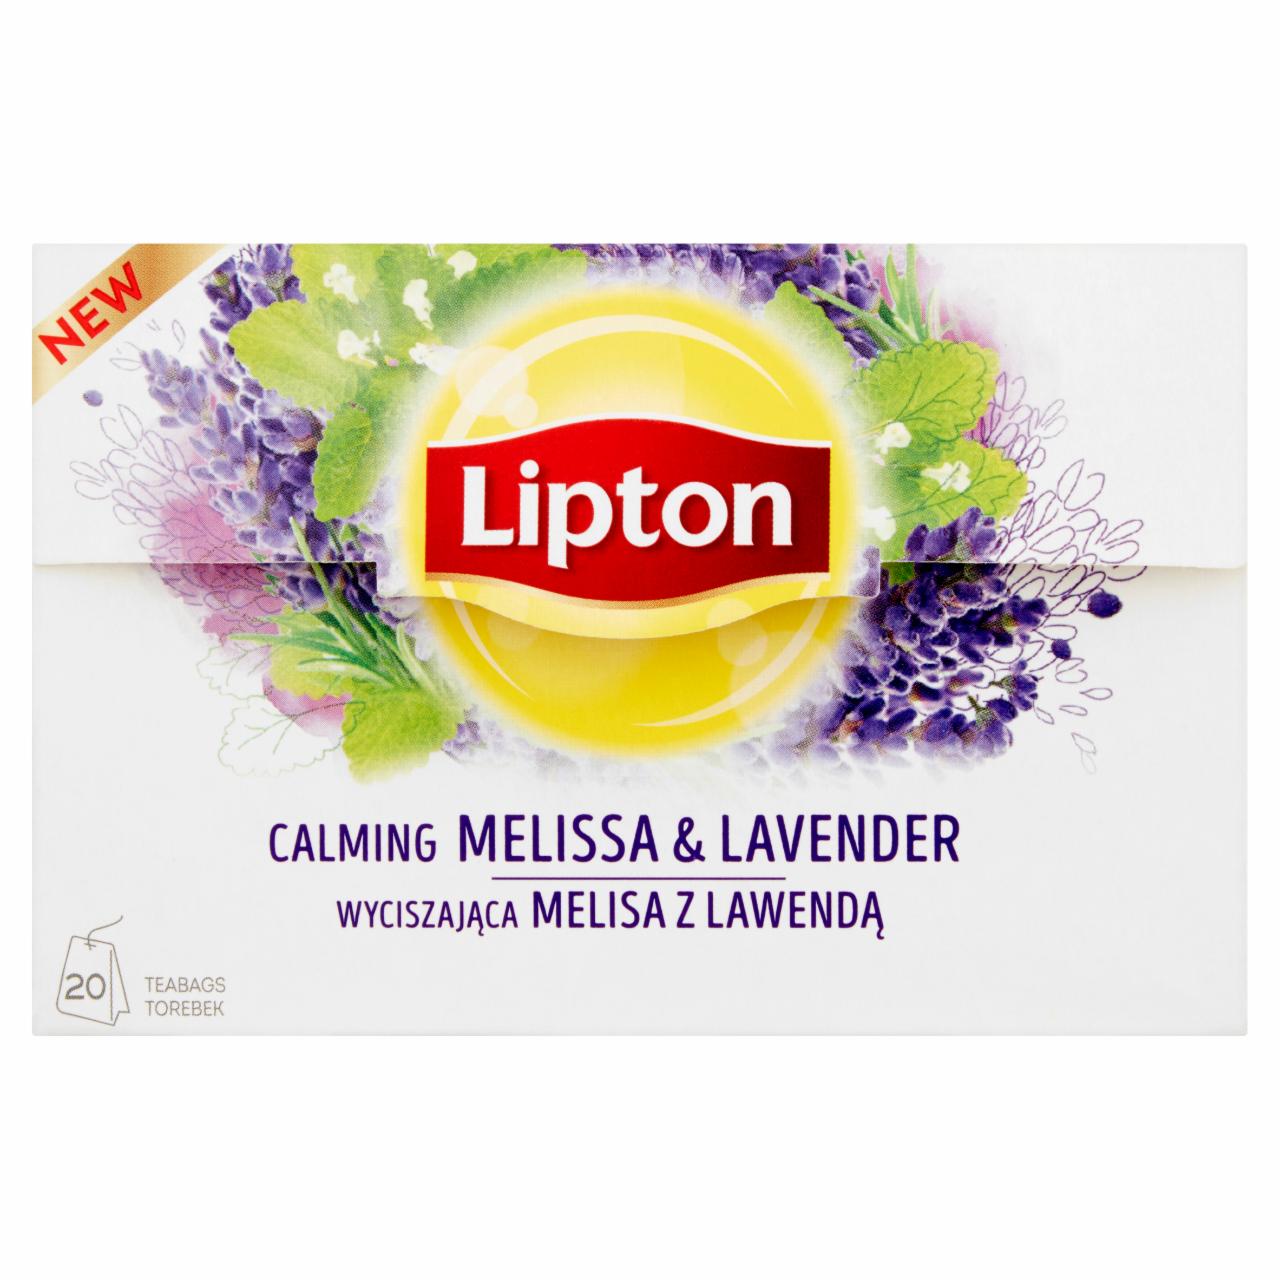 Zdjęcia - Lipton Wyciszająca melisa z lawendą Herbatka ziołowa 26 g (20 torebek)